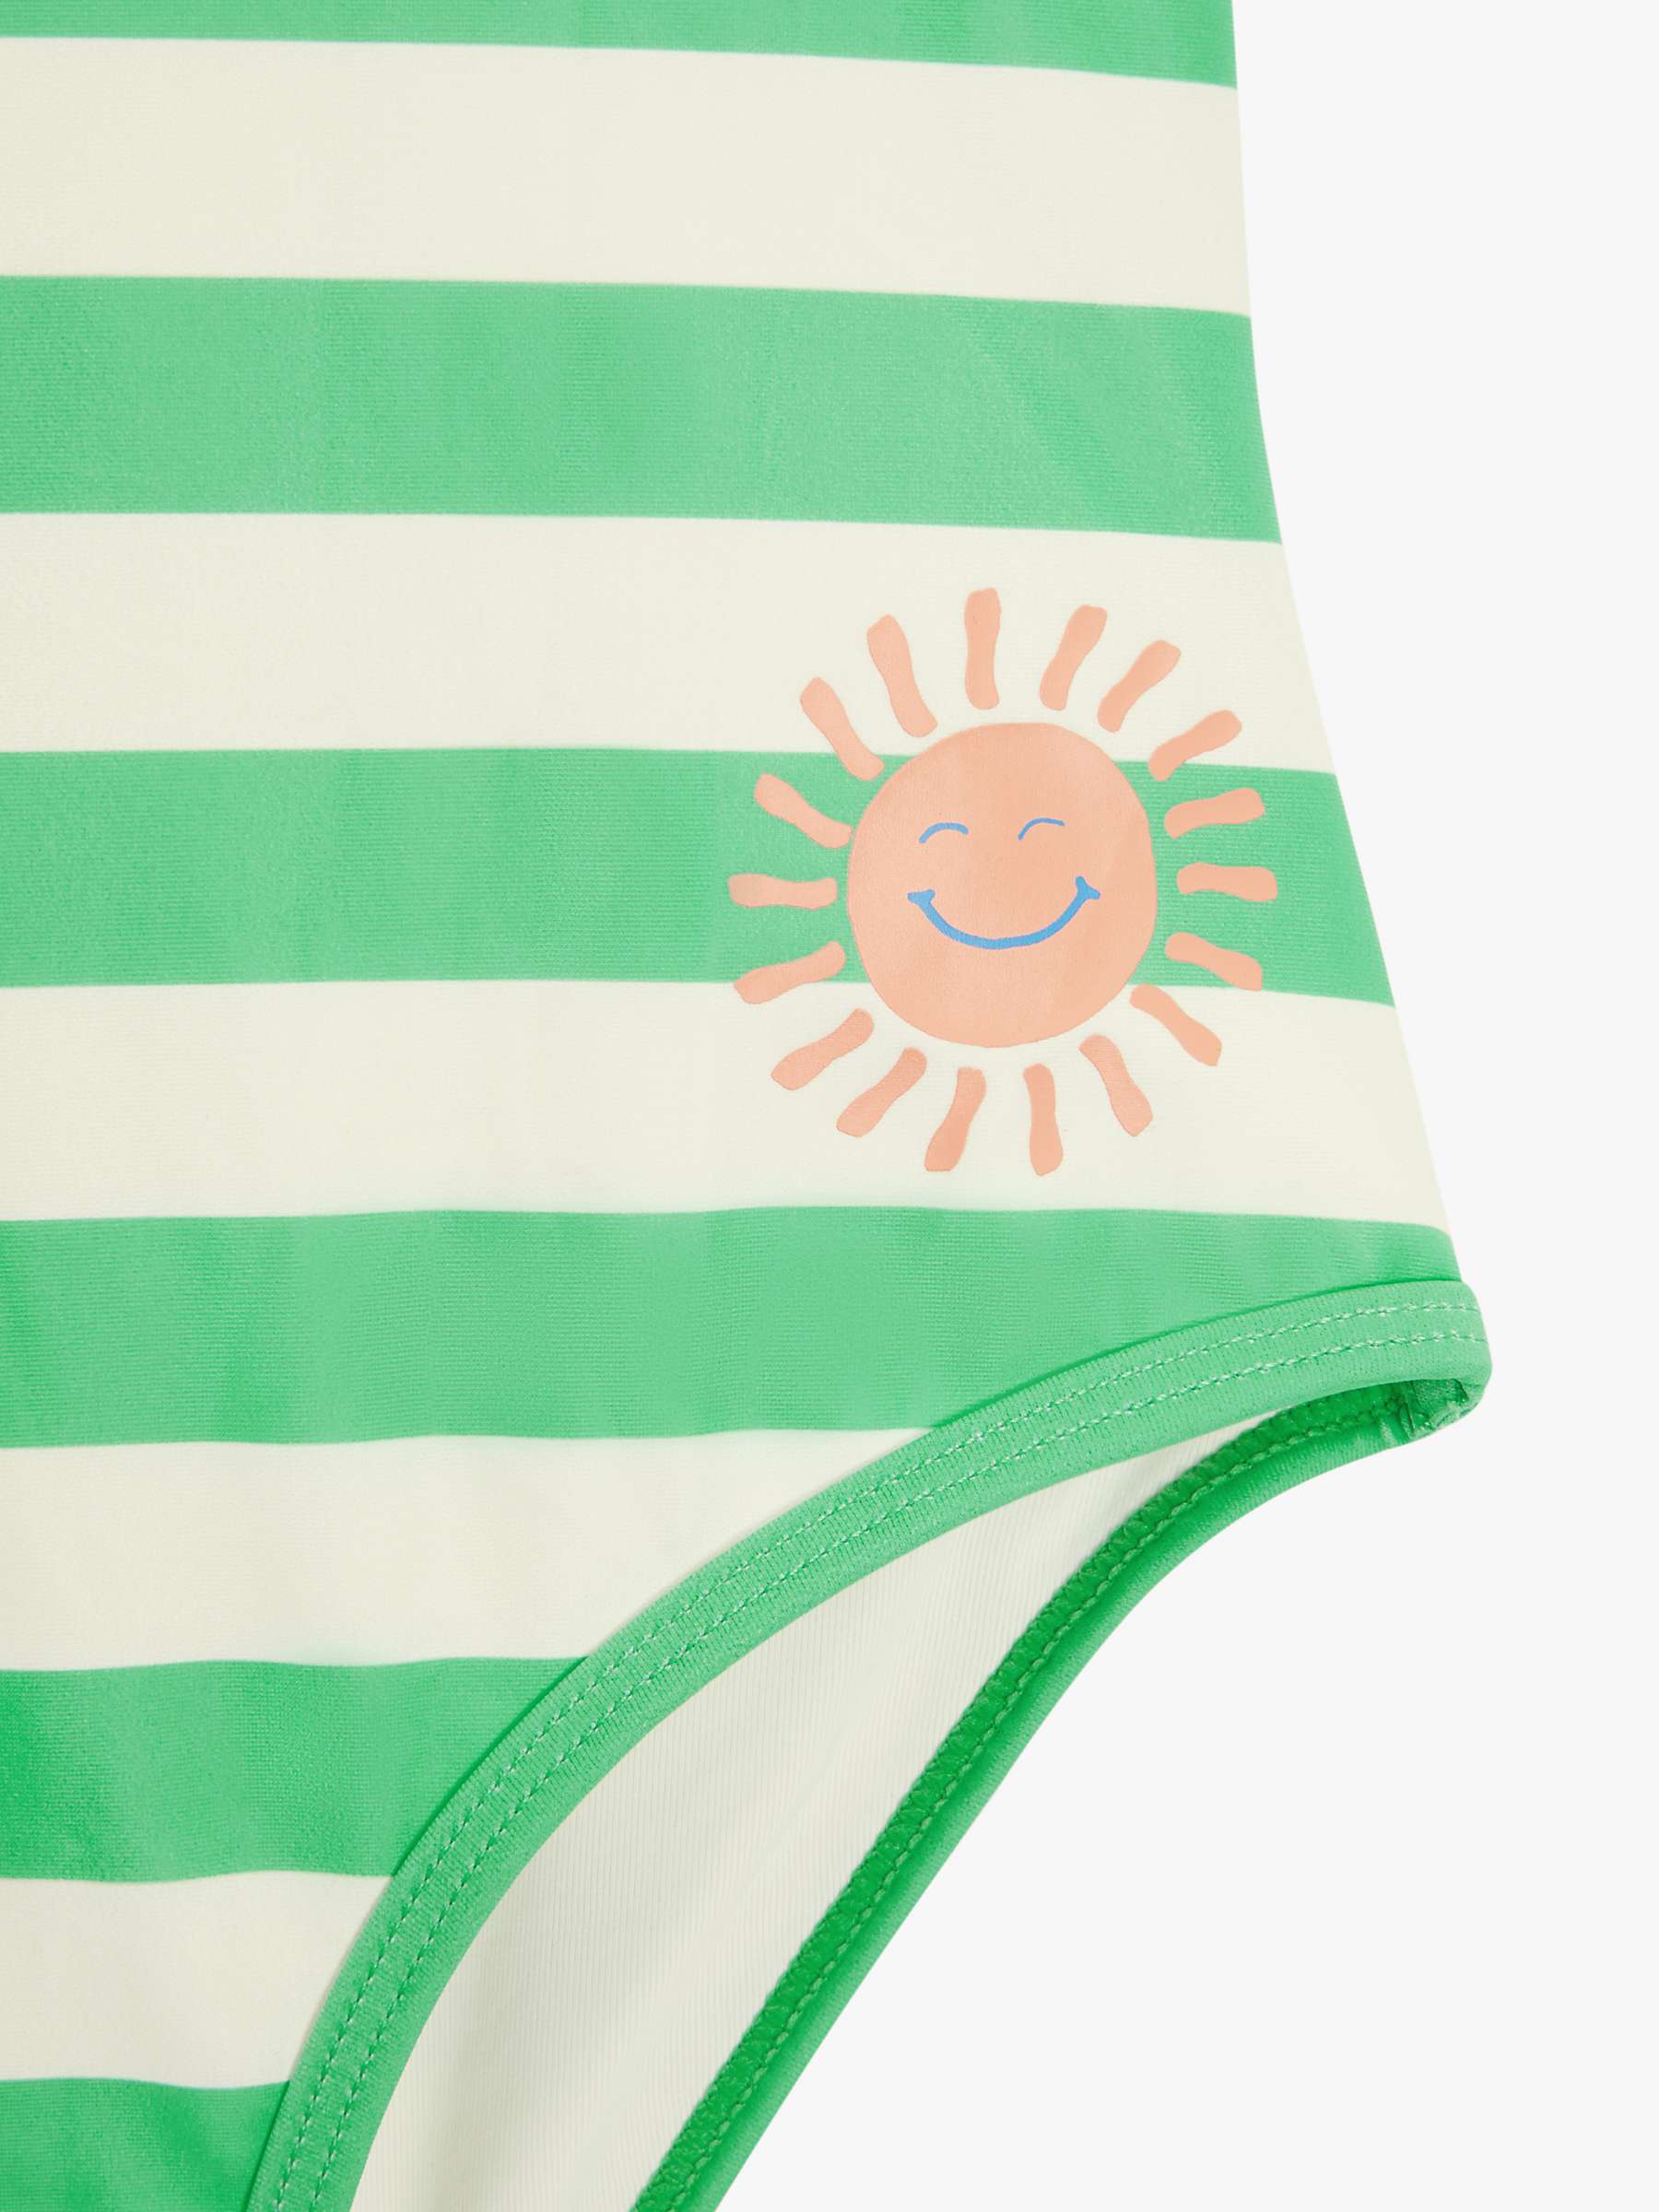 Buy John Lewis Kids' Stripe Sun Swimsuit, Green Online at johnlewis.com